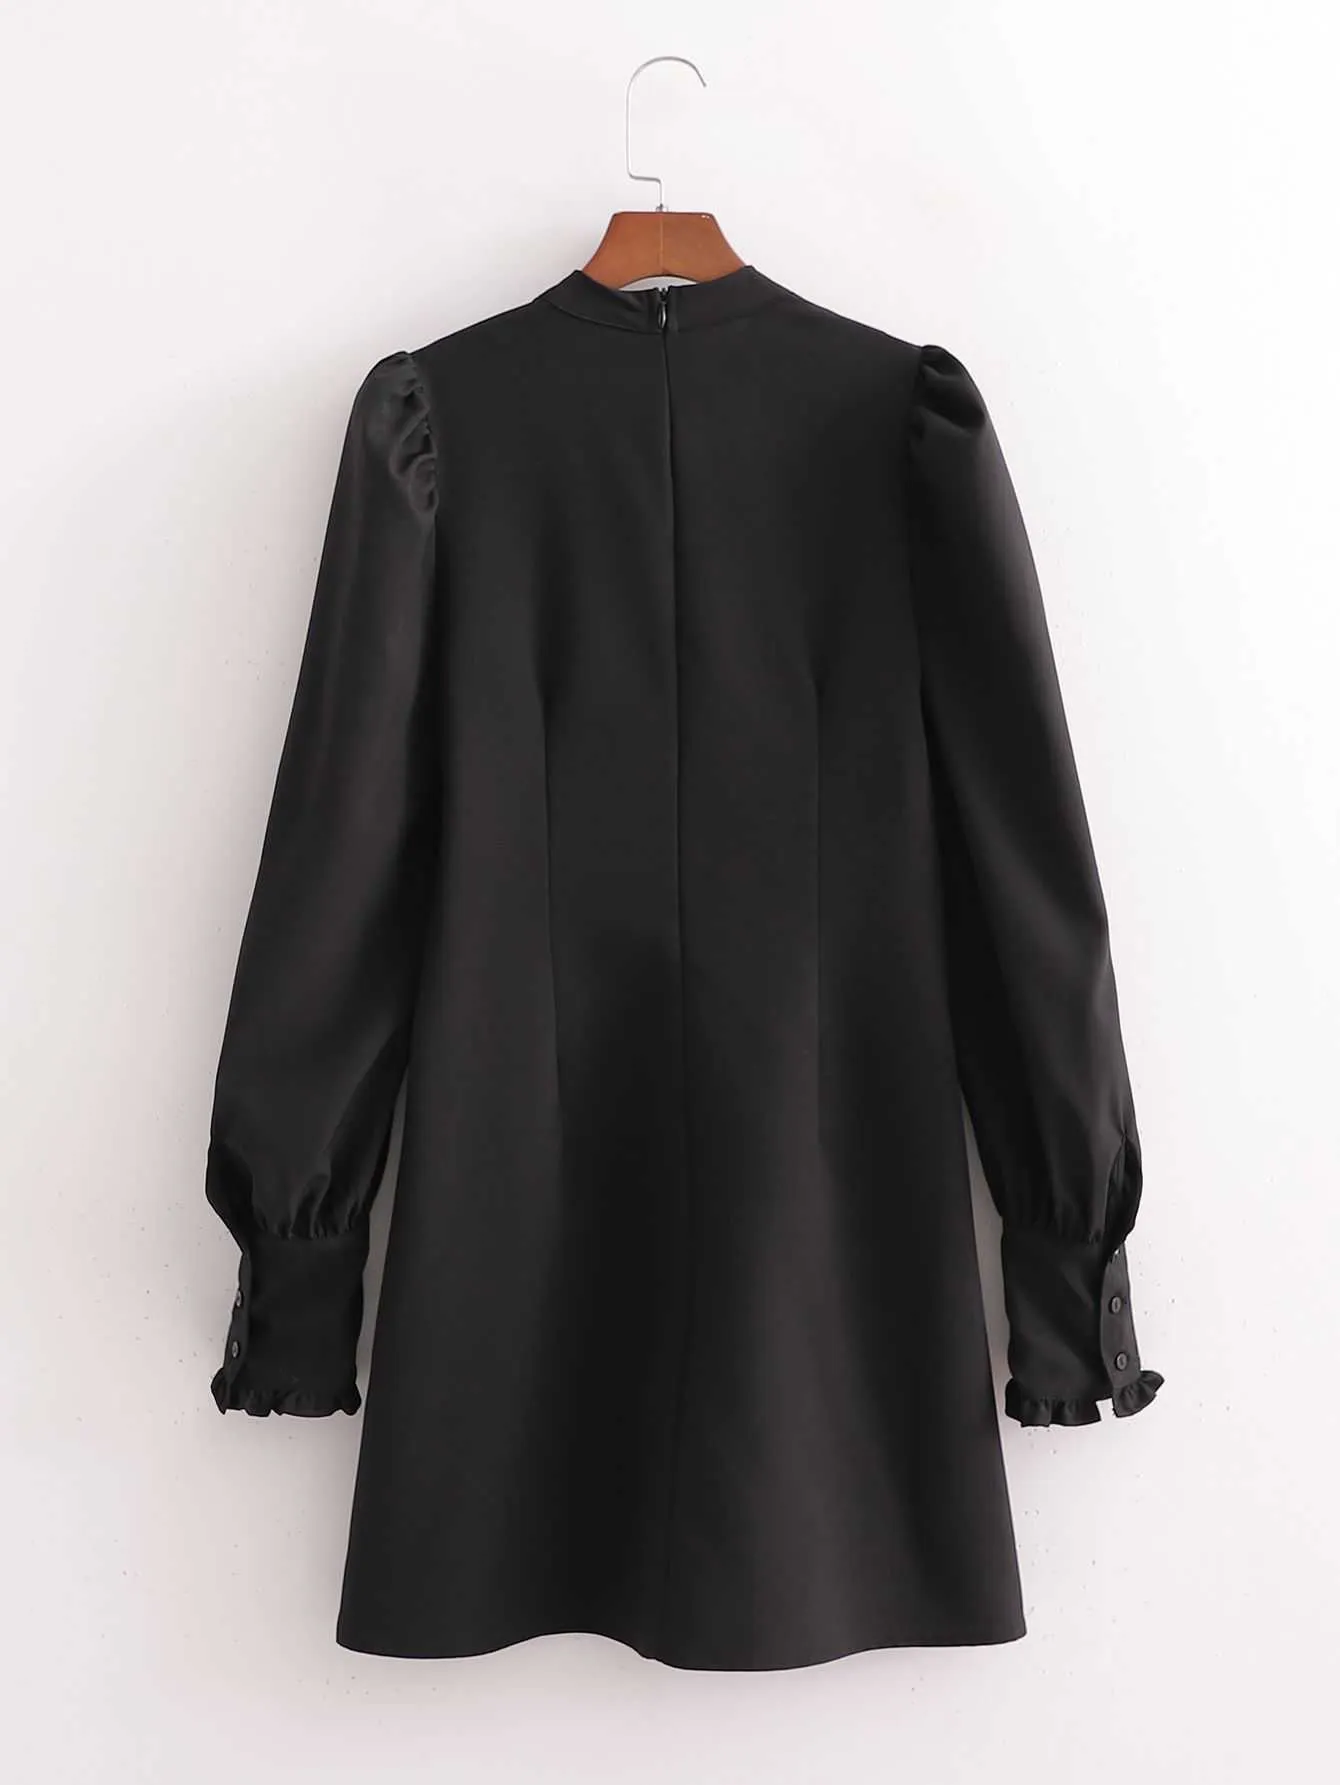 Kadınlar Siyah Elbise Hollow Göğüs Uzun Puf Kollu Slim-Fit Kısa Elbise Zarif Lady Chic Woman Elbiseler 210709